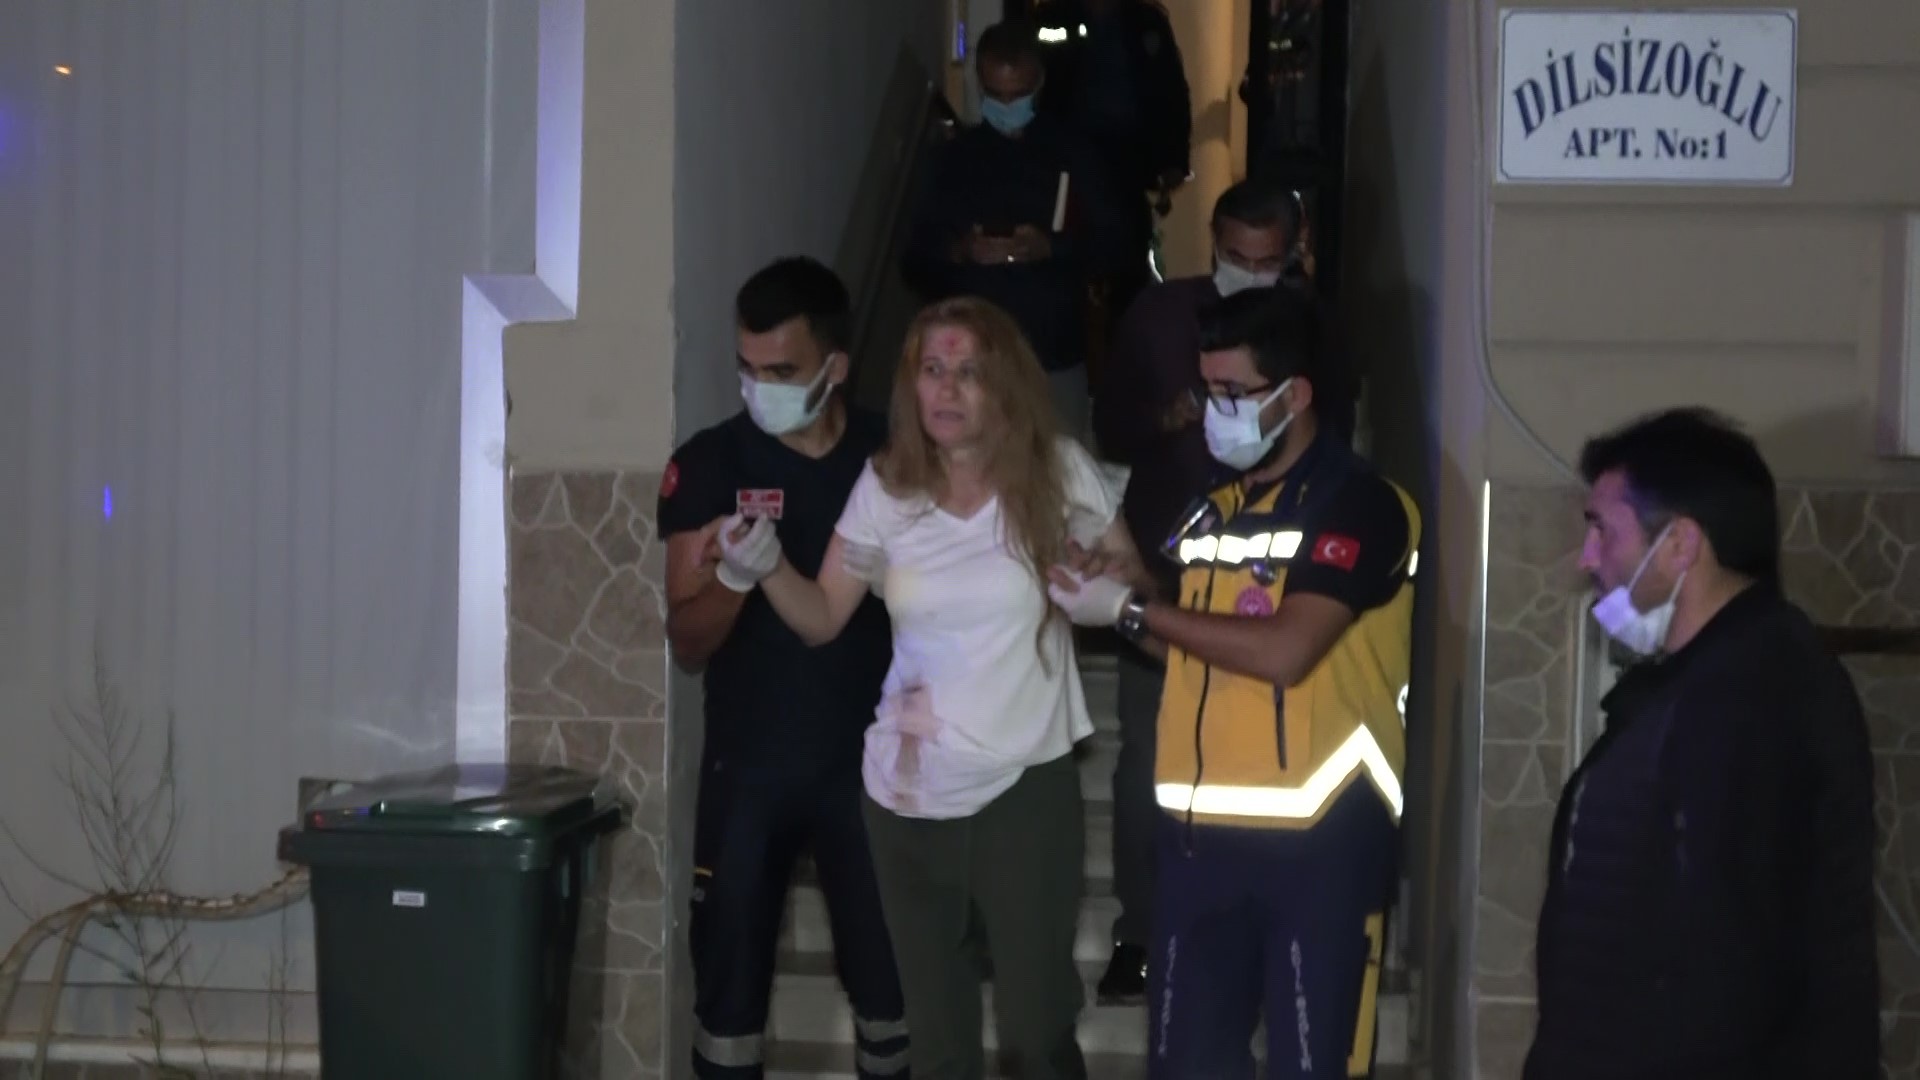 Bursa’da eve giren hırsız önce kadının kafasını kapıya vurdu ardından da bıçakladı